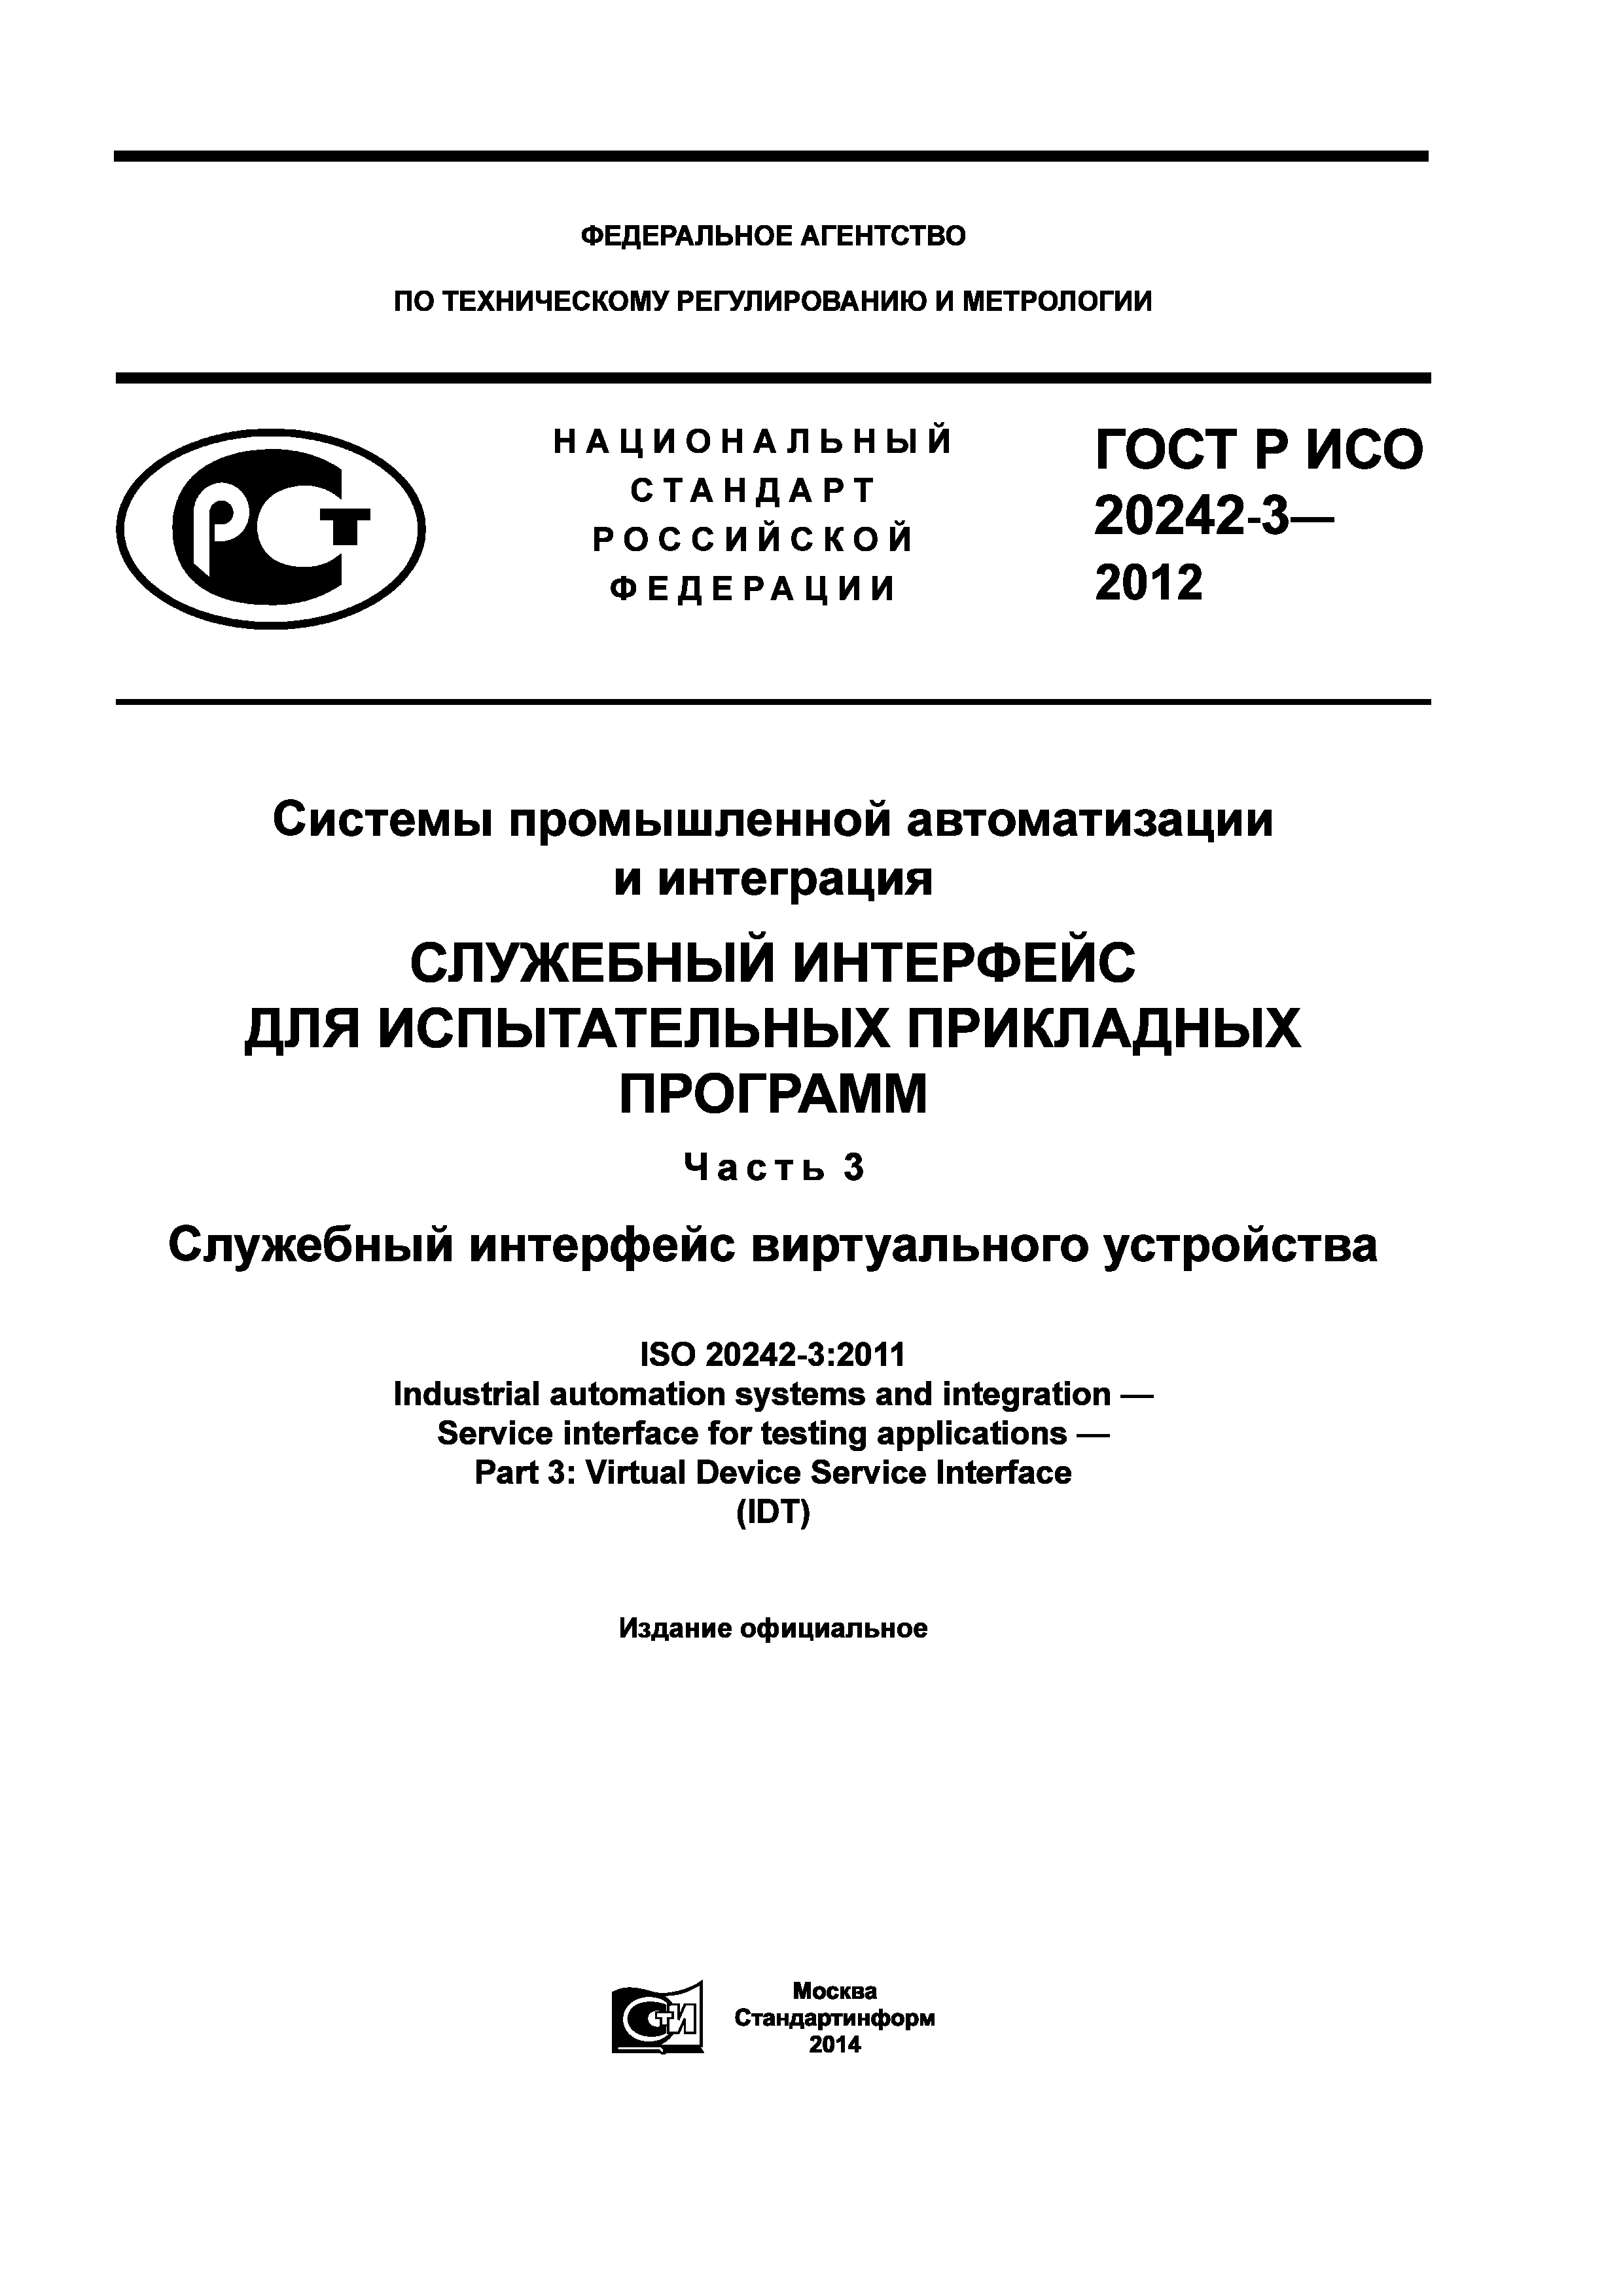 ГОСТ Р ИСО 20242-3-2012